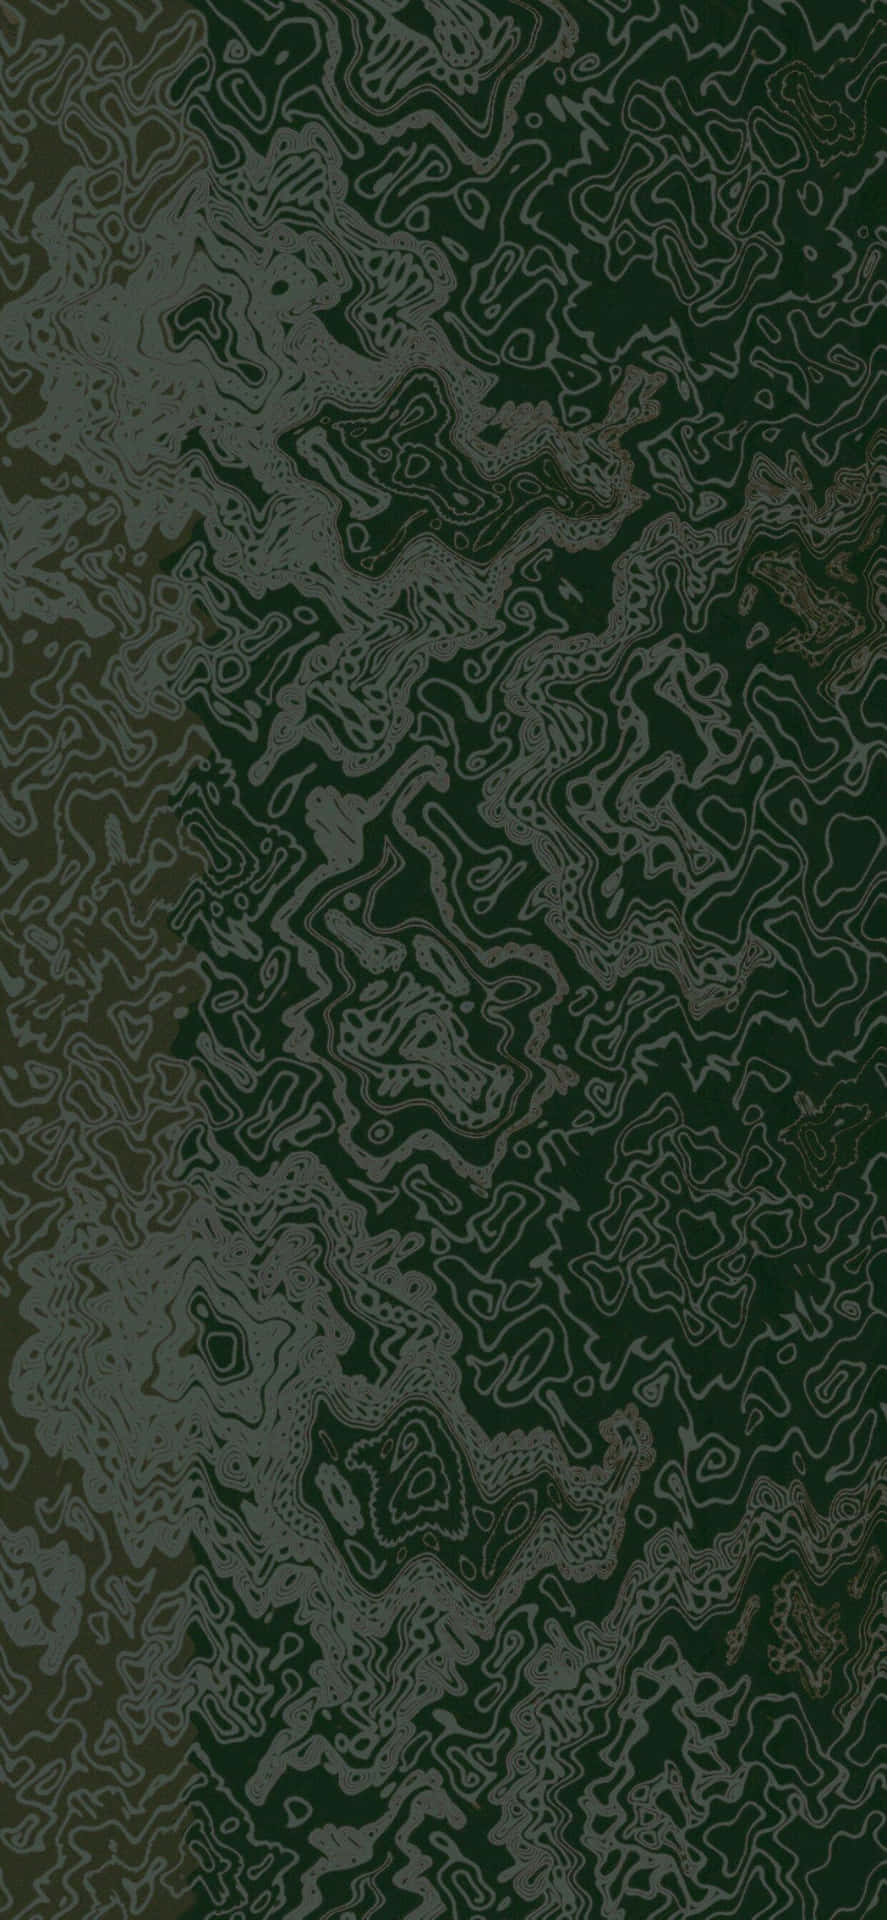 Eineschwarze Und Grüne Tapete Mit Wirbeln. Wallpaper